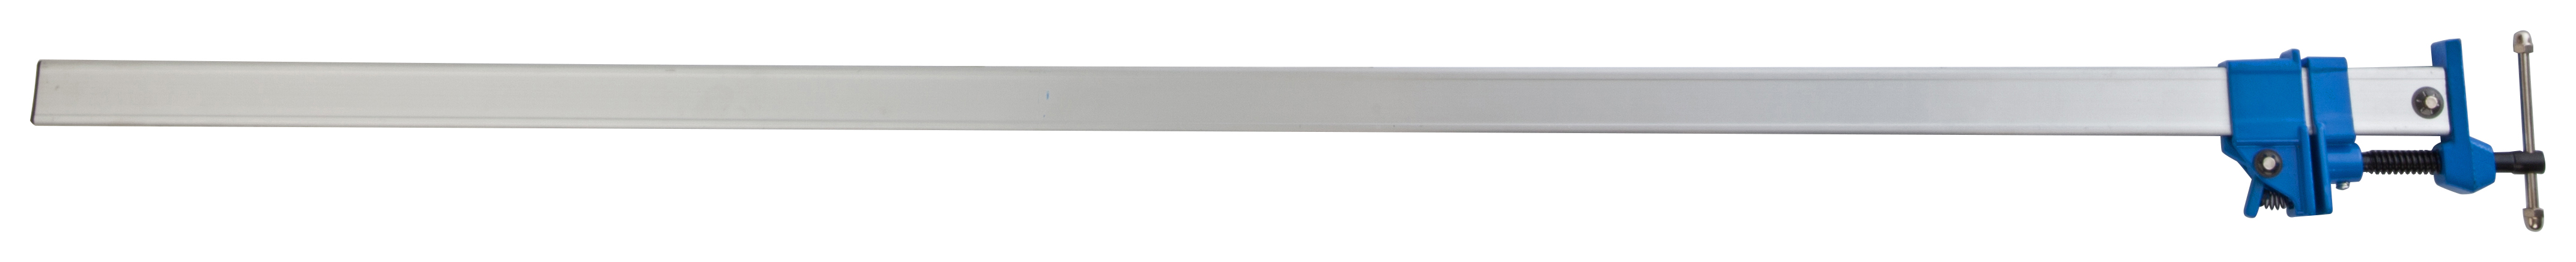 Wickes Aluminium Sash Clamp - 48in / 1200mm